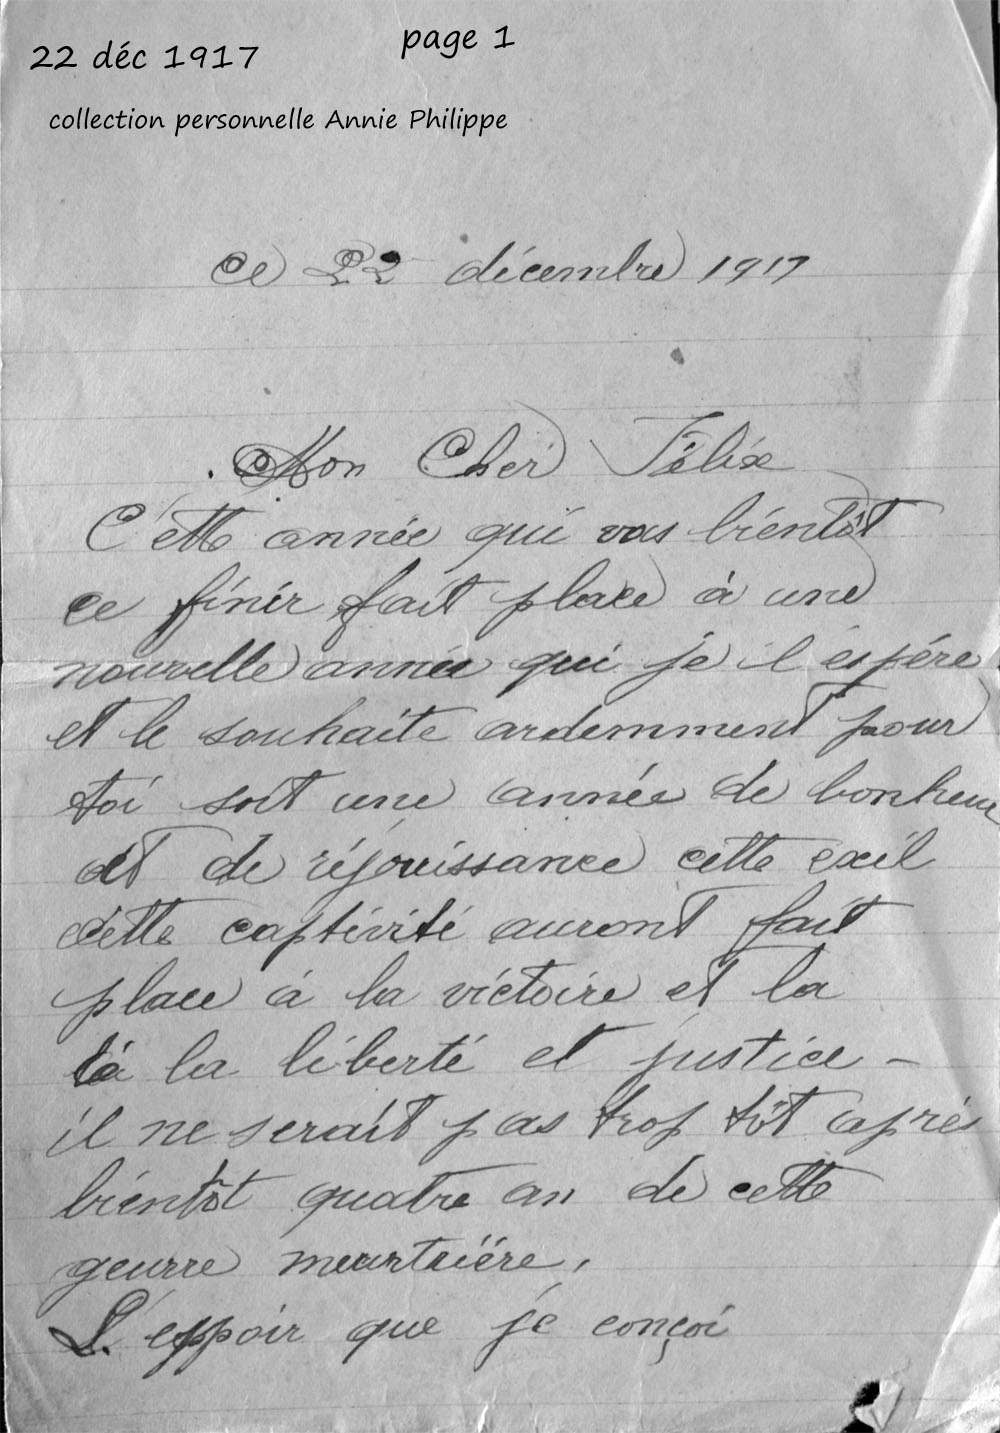 1917 12 22 page 1site to be lettre à félix